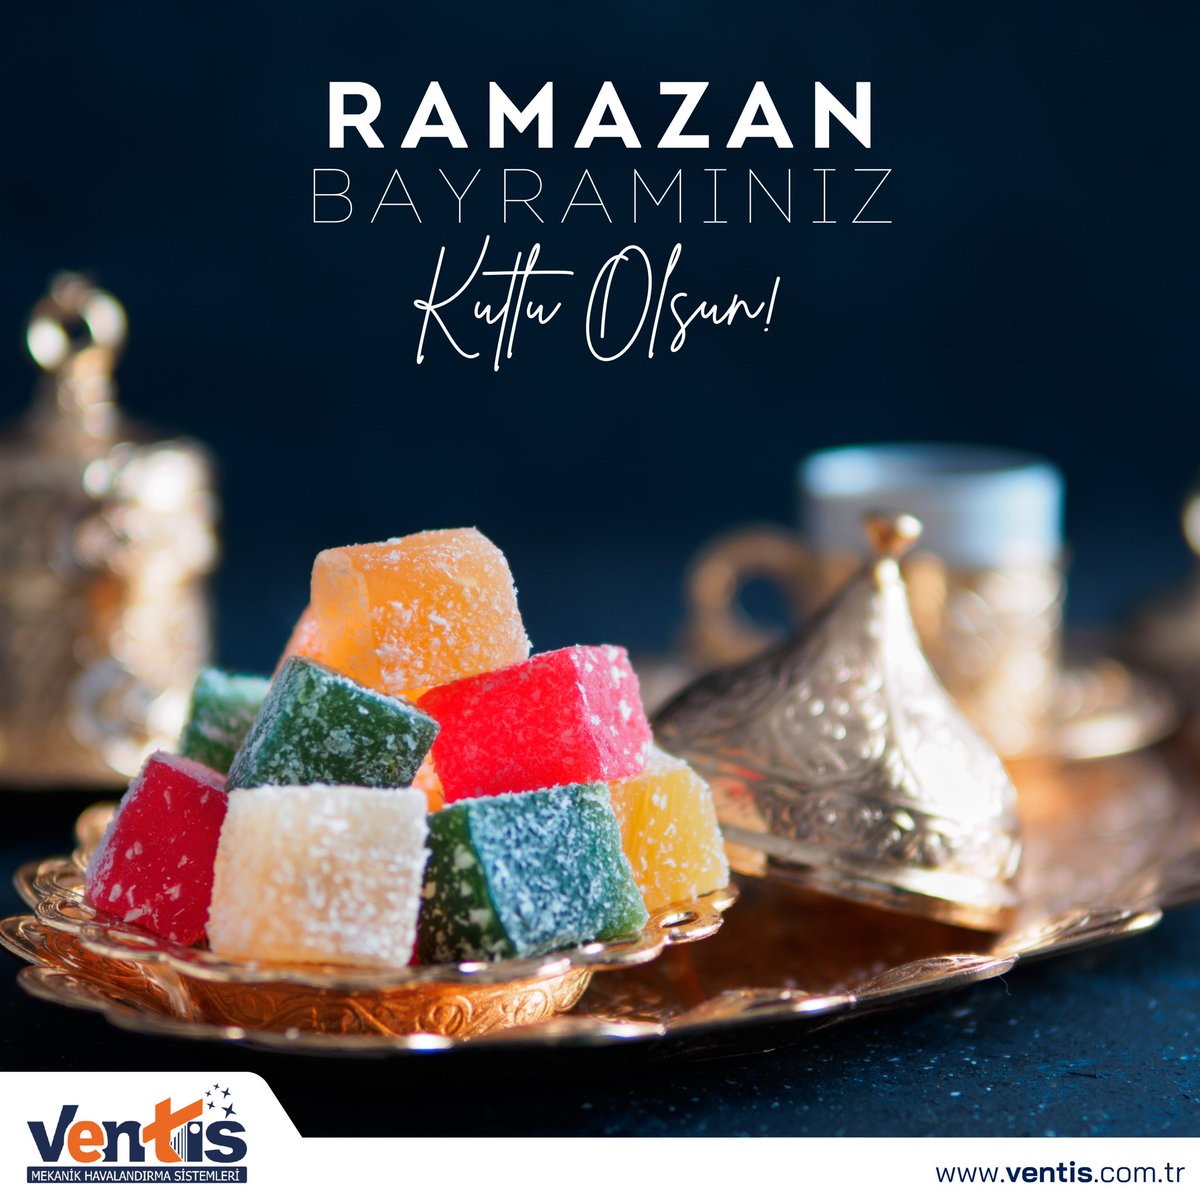 Ramazan Bayramınızı kutlar, sevdiklerinizle beraber huzurlu ve mutlu bir bayram geçirmenizi dileriz. 🍬 #Ramazan #RamazanBayramı